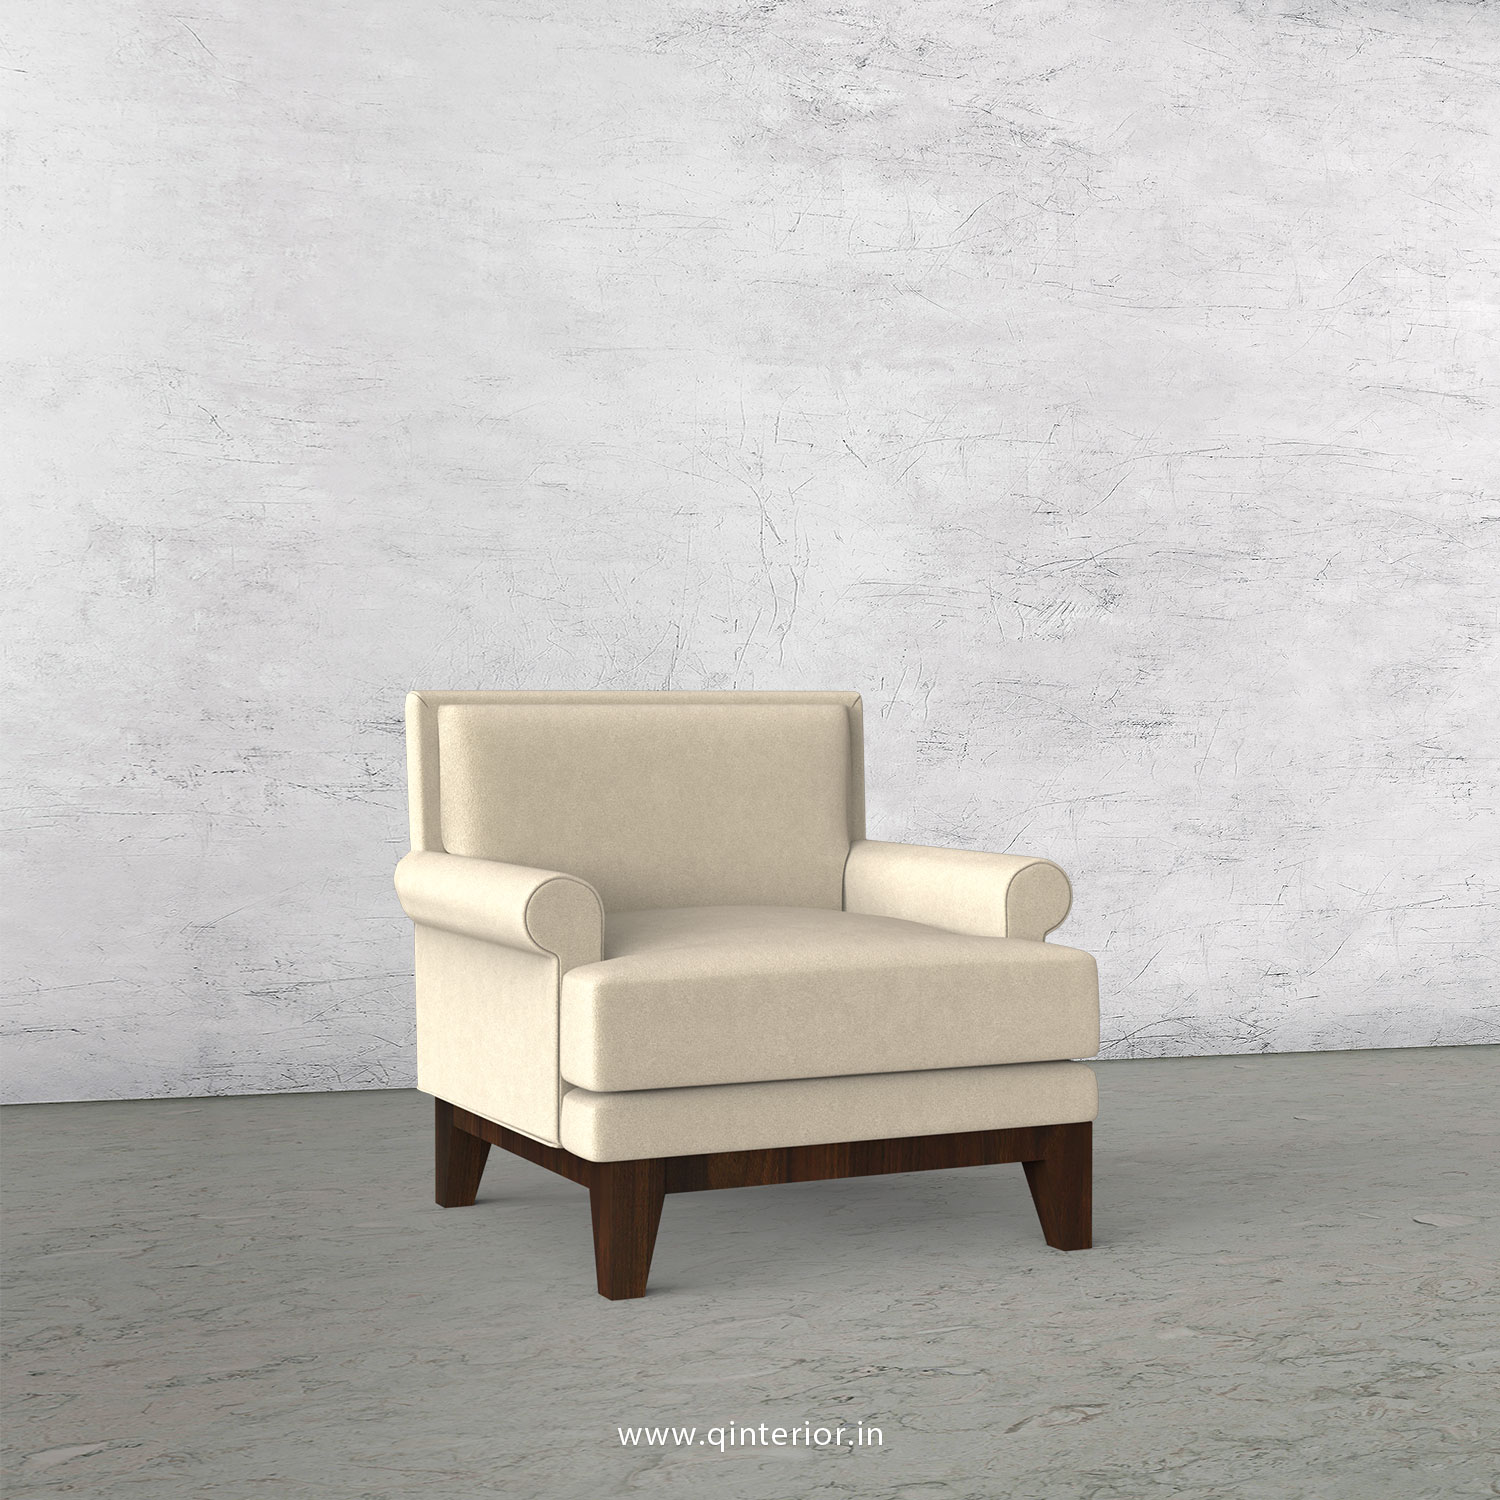 Aviana 1 Seater Sofa in Velvet Fabric - SFA001 VL01